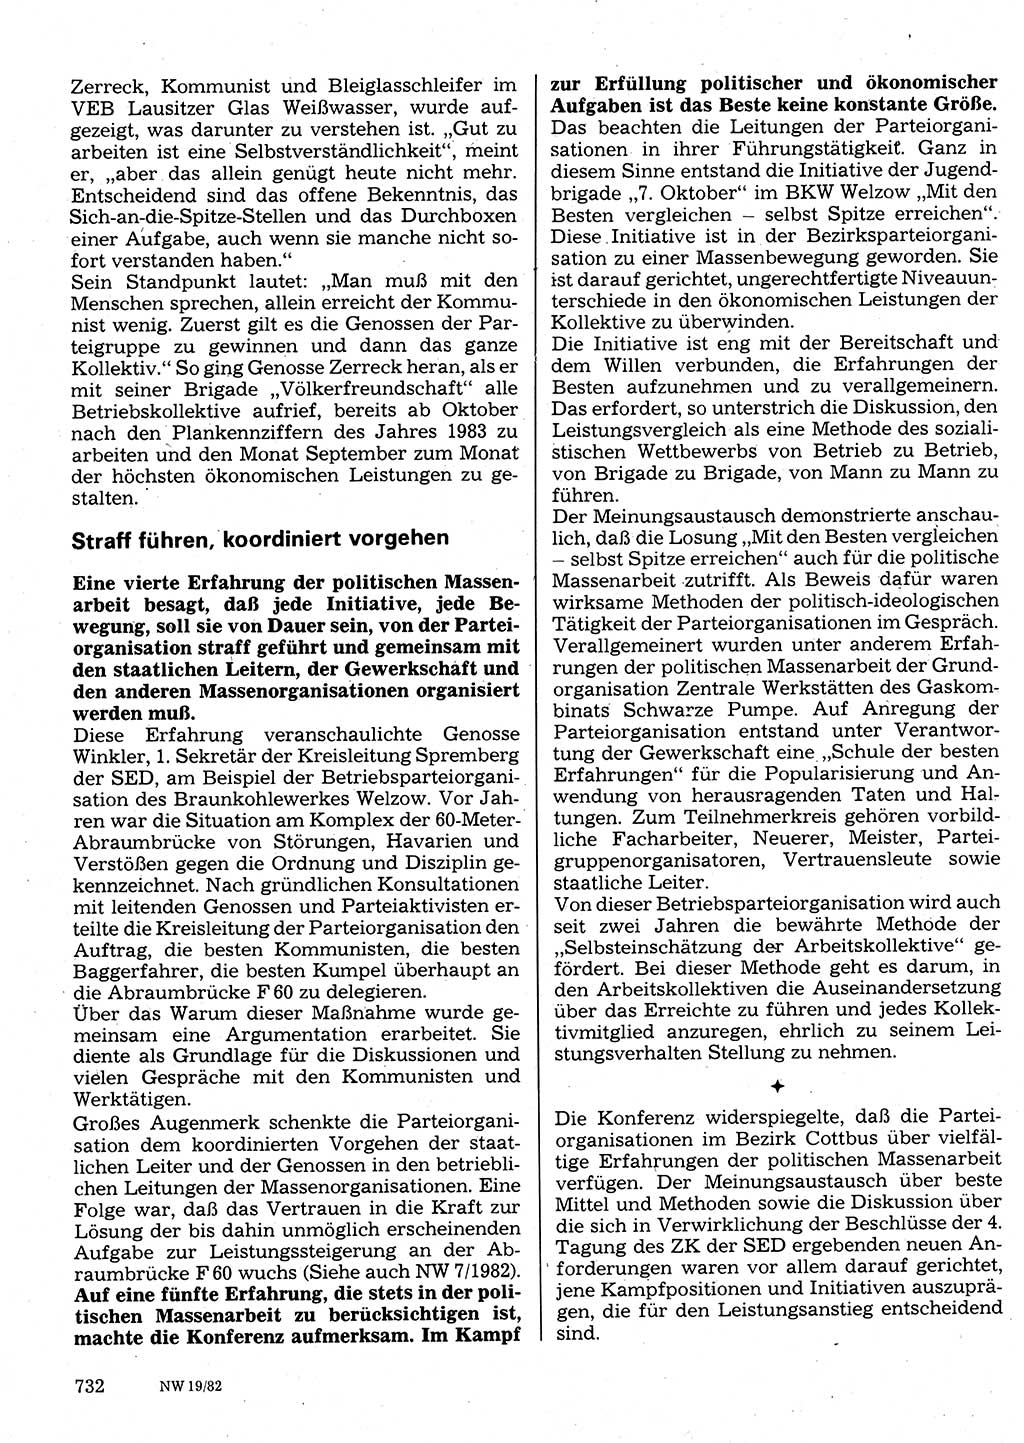 Neuer Weg (NW), Organ des Zentralkomitees (ZK) der SED (Sozialistische Einheitspartei Deutschlands) für Fragen des Parteilebens, 37. Jahrgang [Deutsche Demokratische Republik (DDR)] 1982, Seite 732 (NW ZK SED DDR 1982, S. 732)